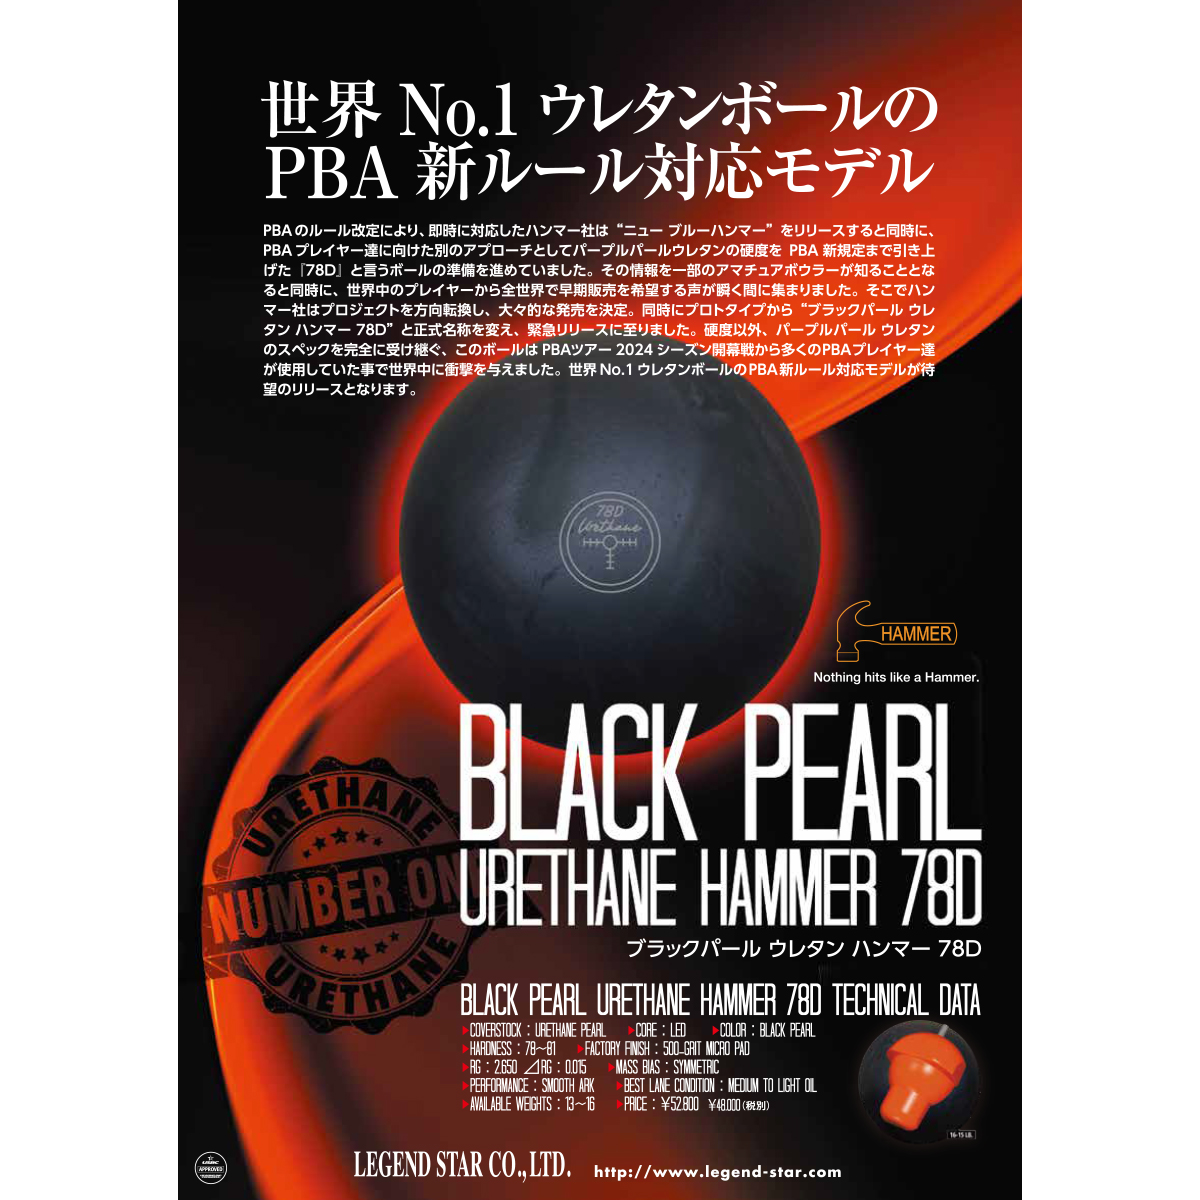 (ハンマー)ブラックパール ウレタン ハンマー 78D - ウインドウを閉じる